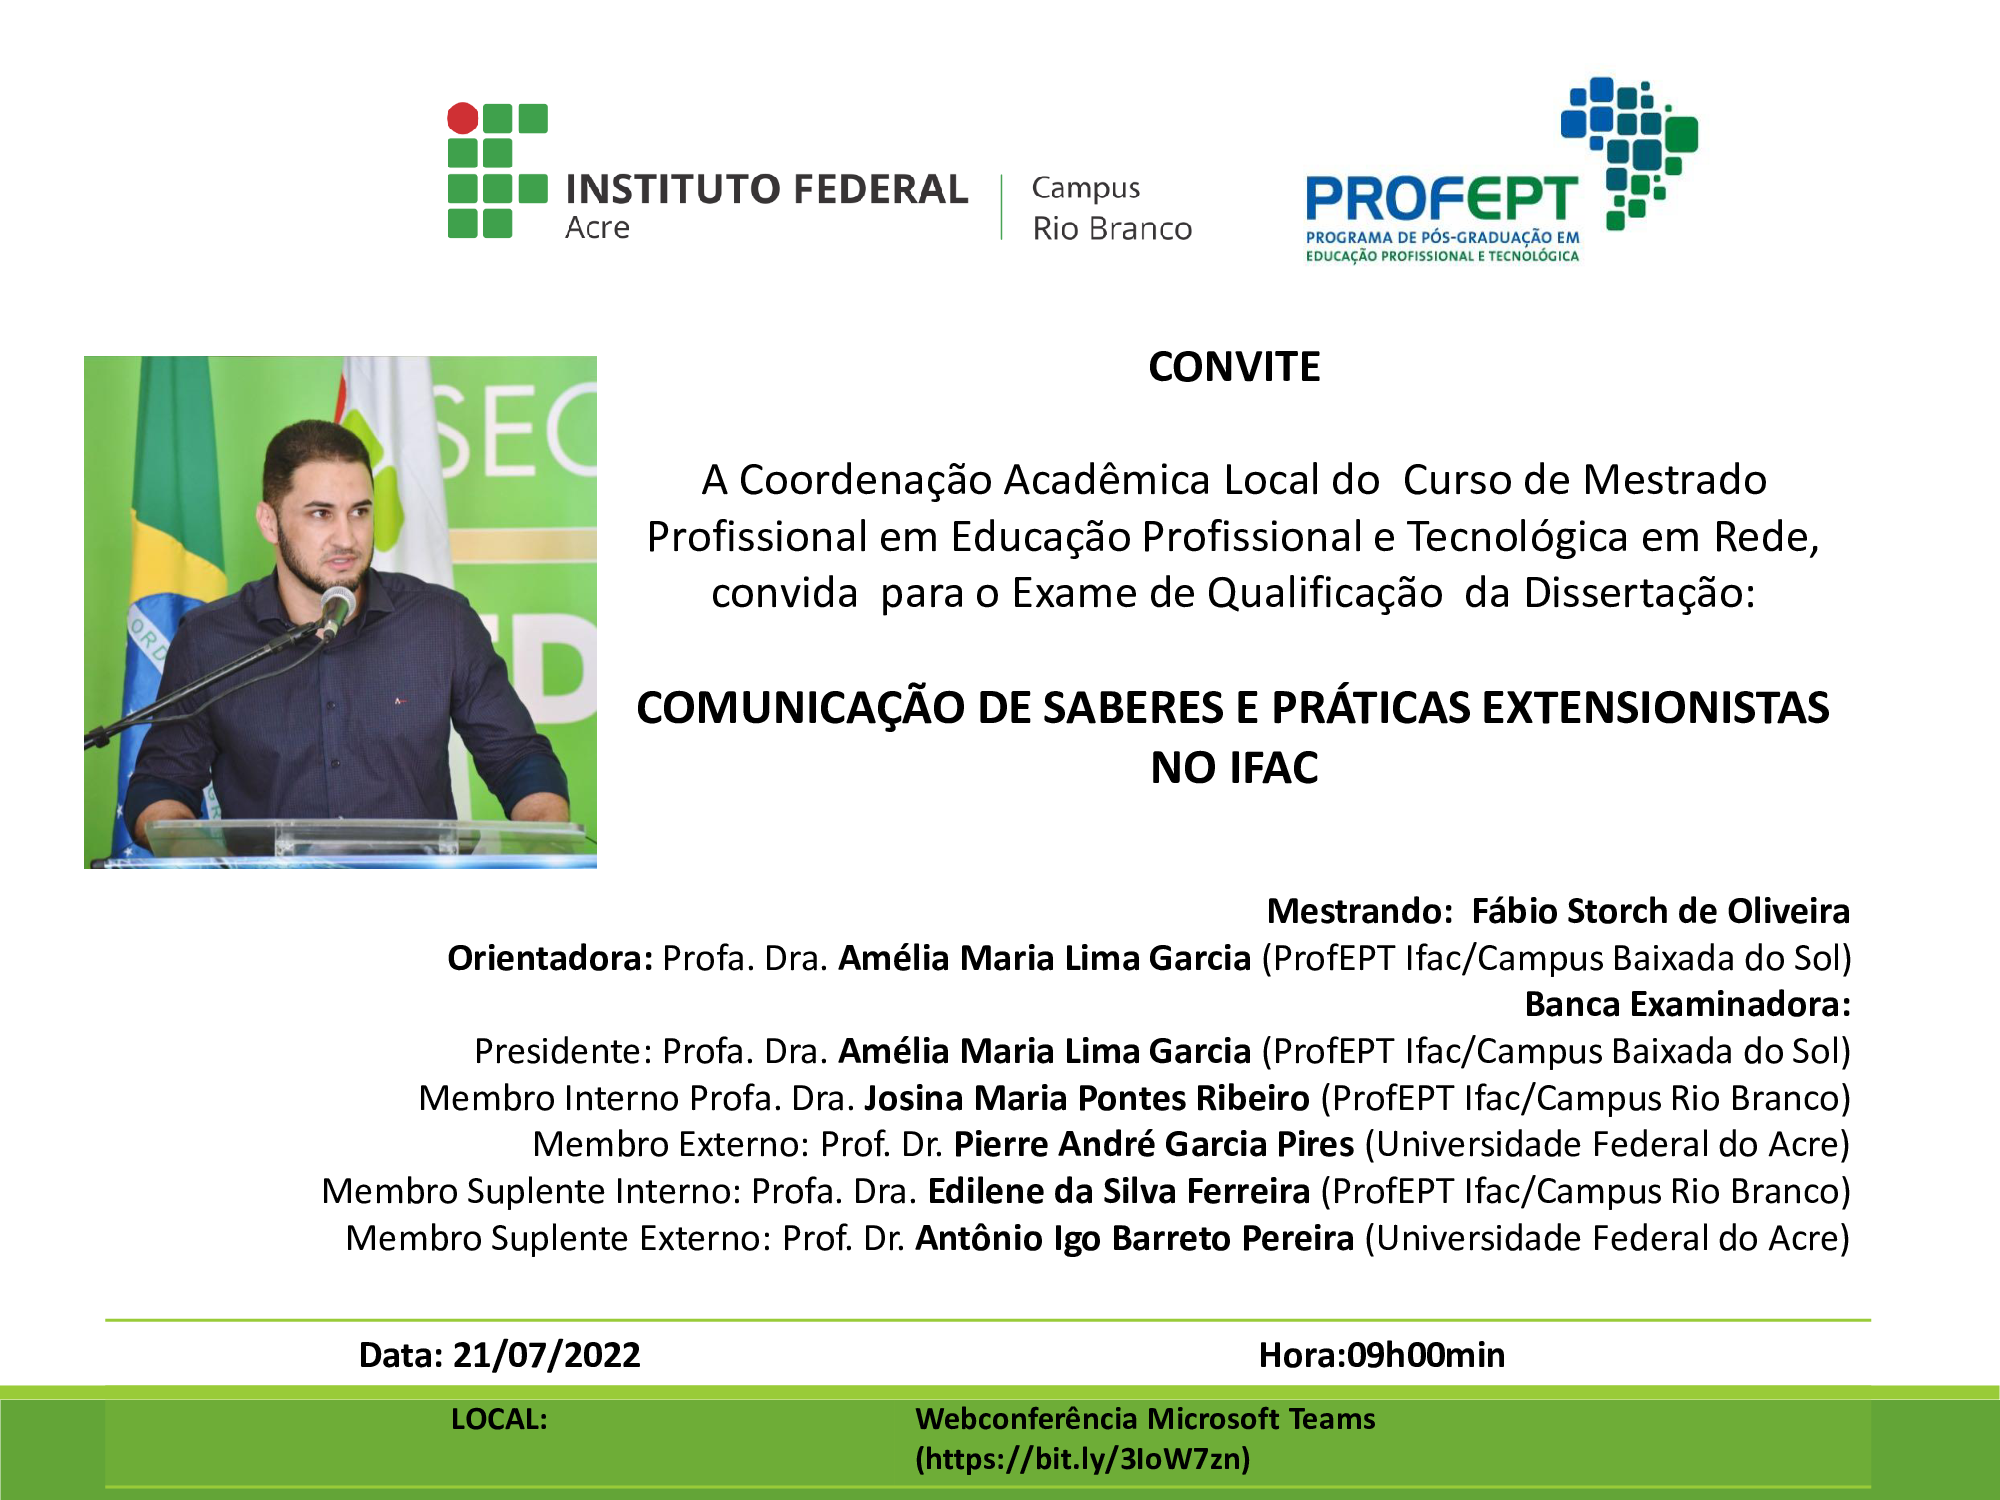 Convite para defesa de qualificação do mestrando Fábio Storch de Oliveira, com dissertação intitulada: "Comunicação de Saberes e Práticas Extensionistas no Ifac".